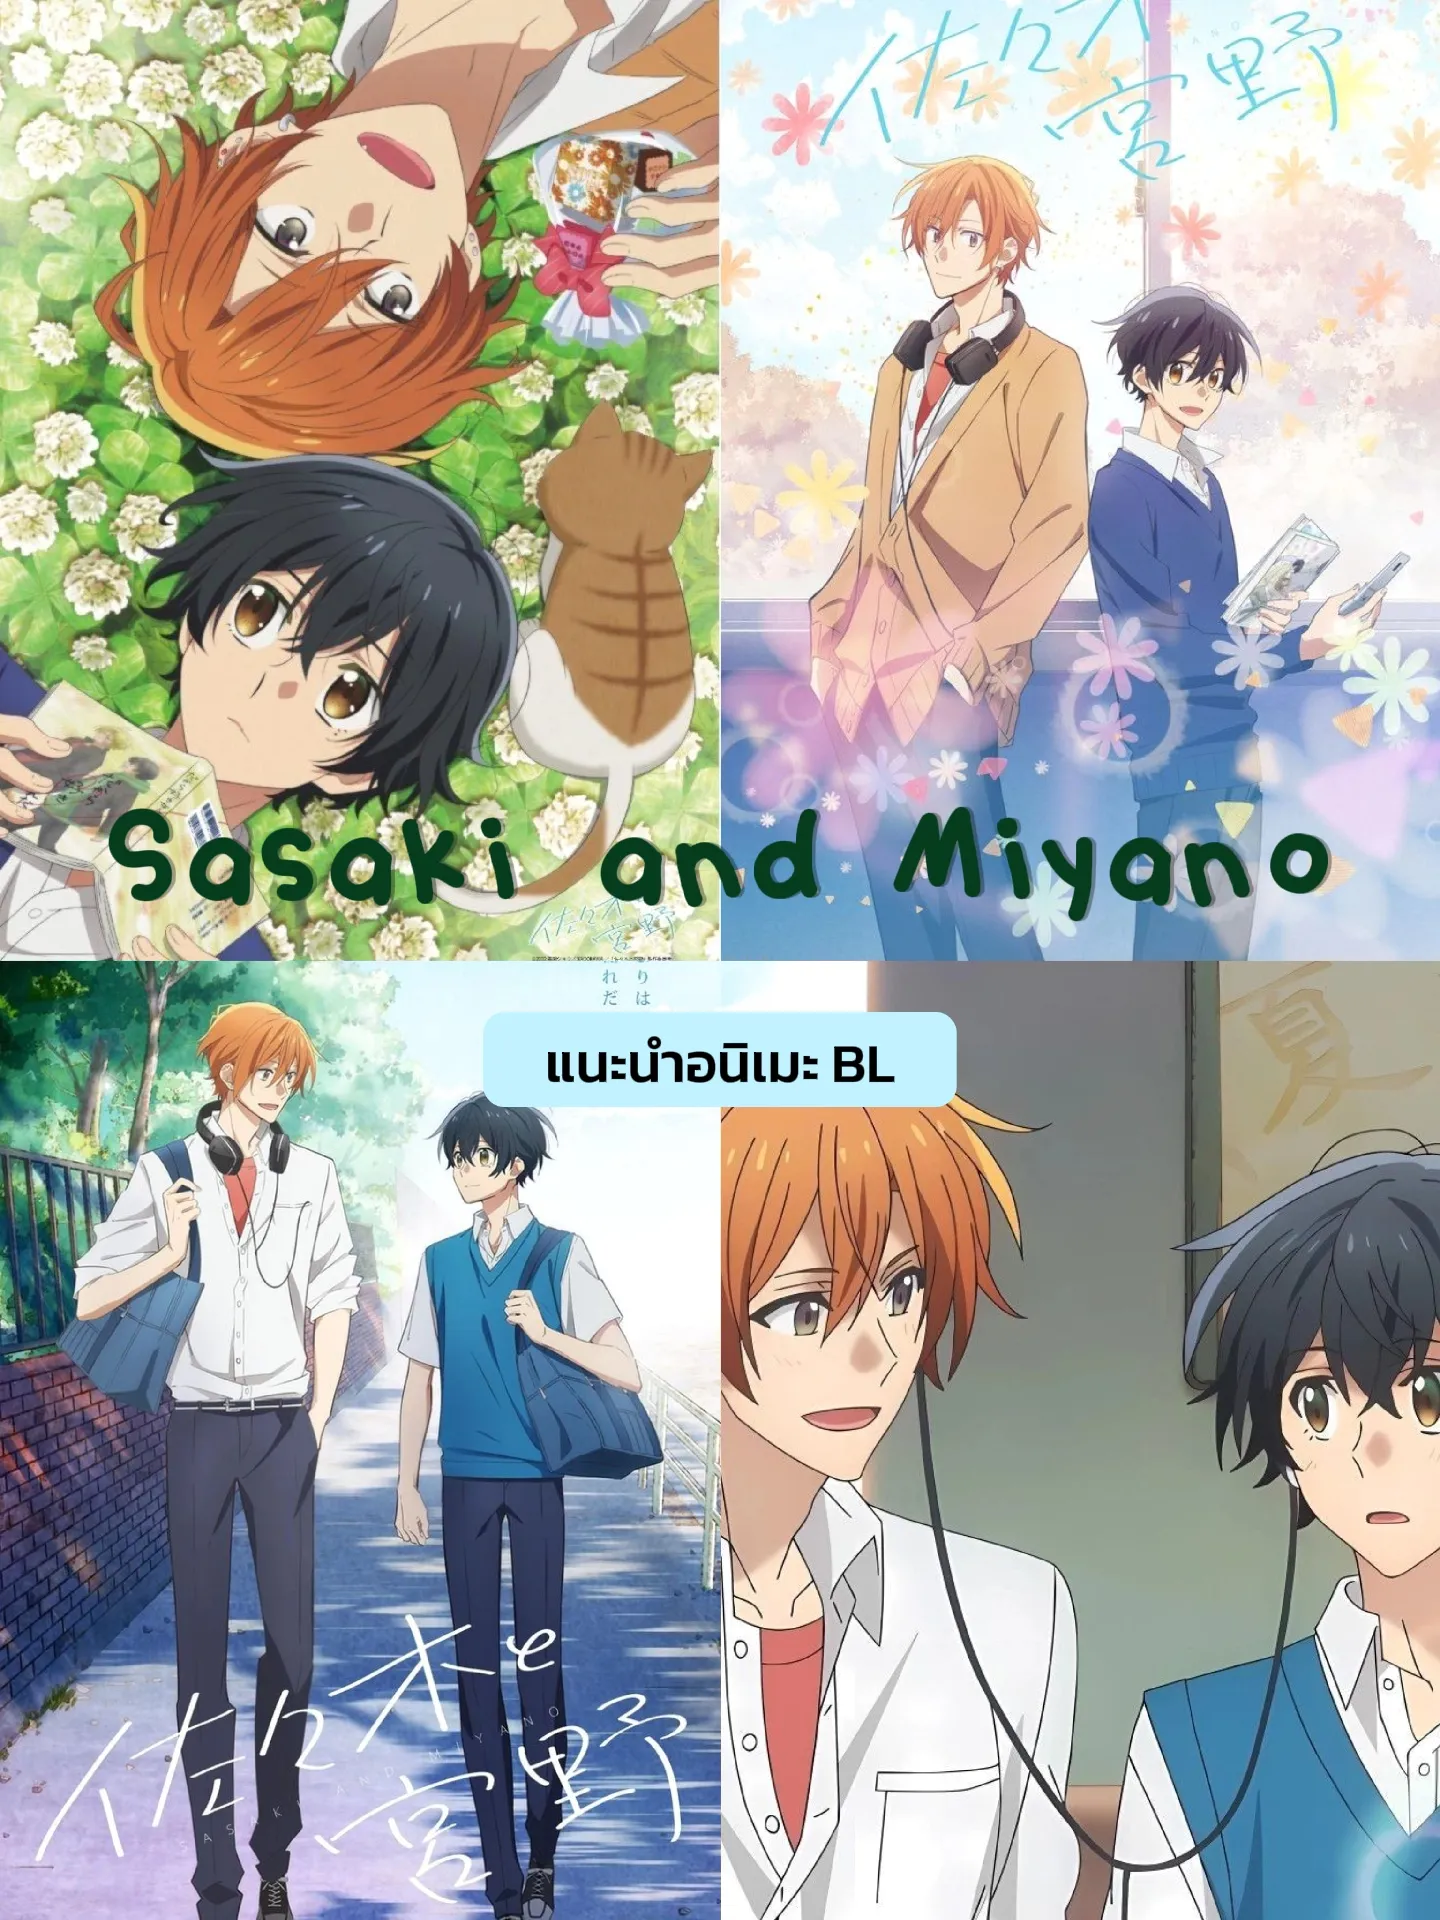 Anime & Manga (Episode 1) ❤ . Anime/Manga Title: Sasaki to Miyano